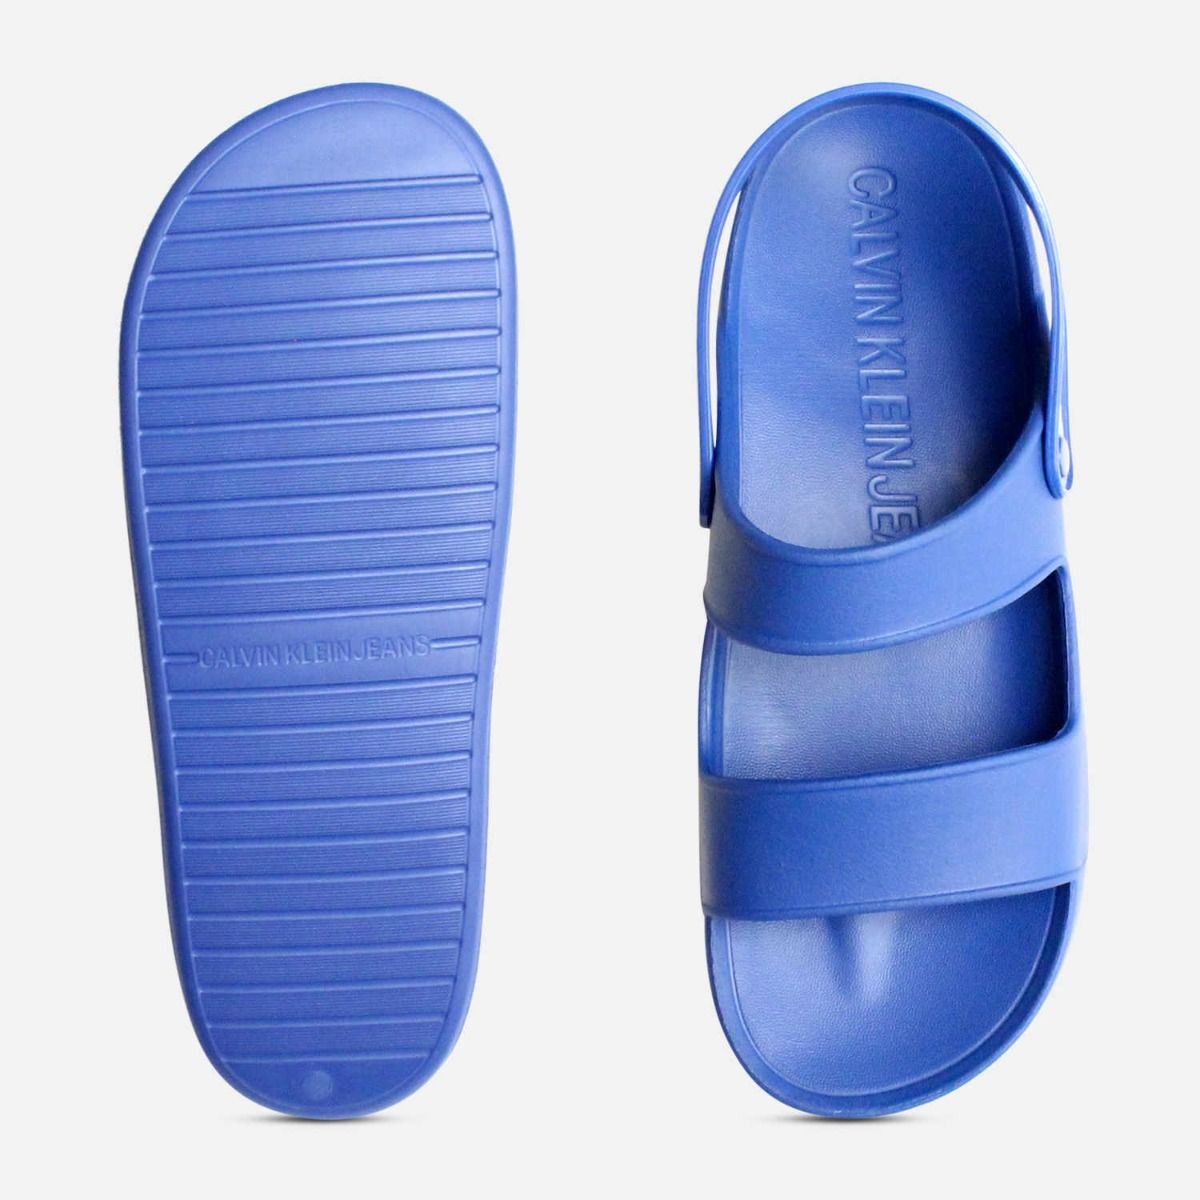 Calvin Klein Designer Rubber Sandals in 